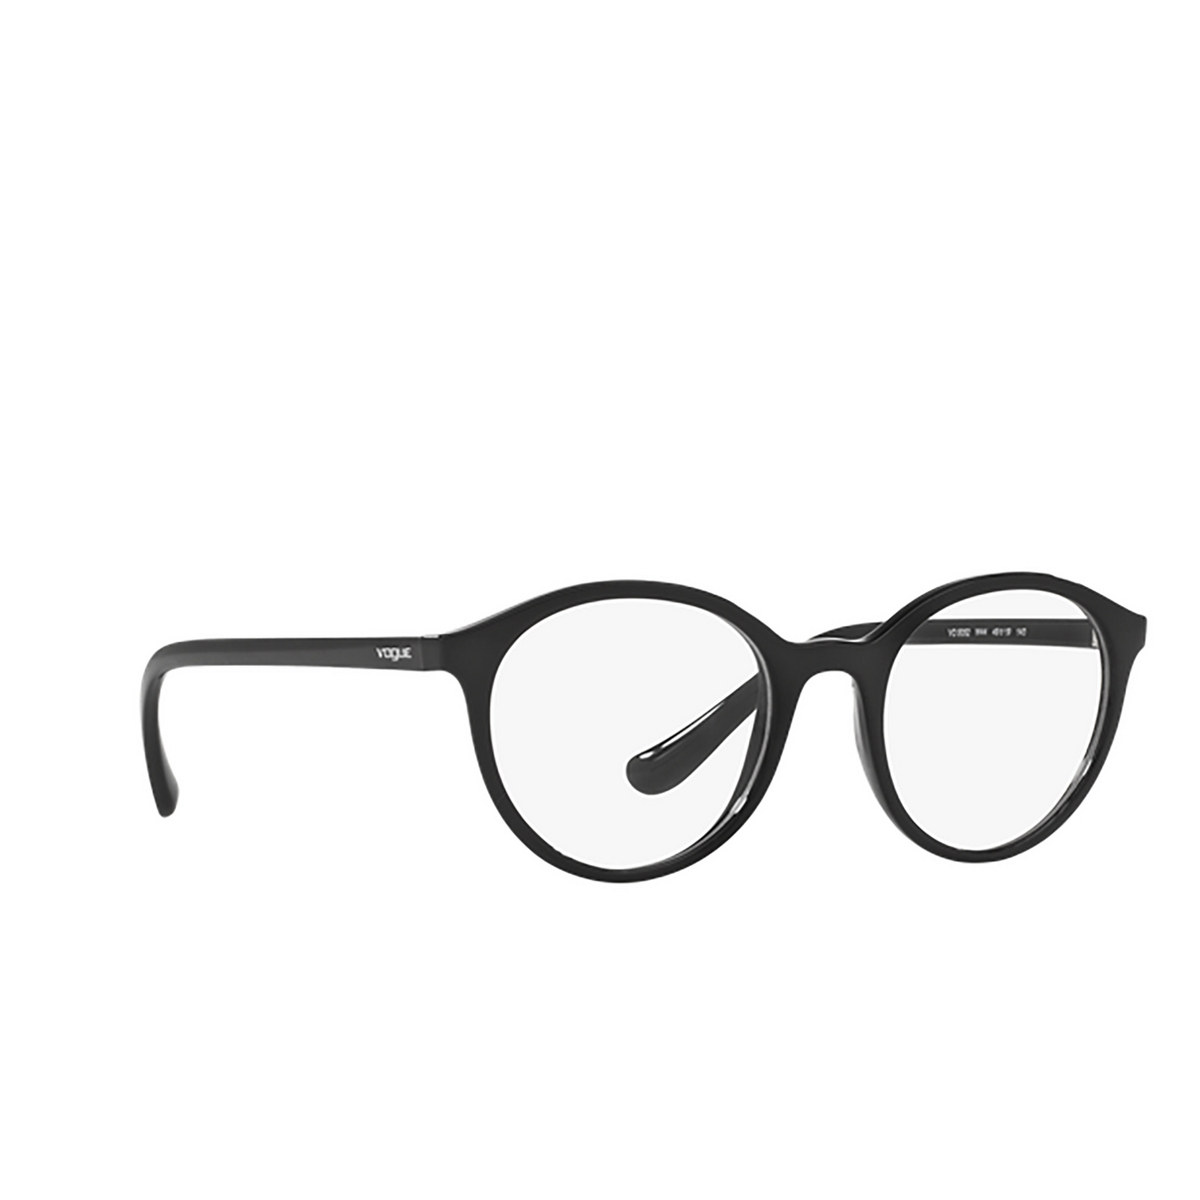 Vogue VO5052 Eyeglasses W44 Black - three-quarters view